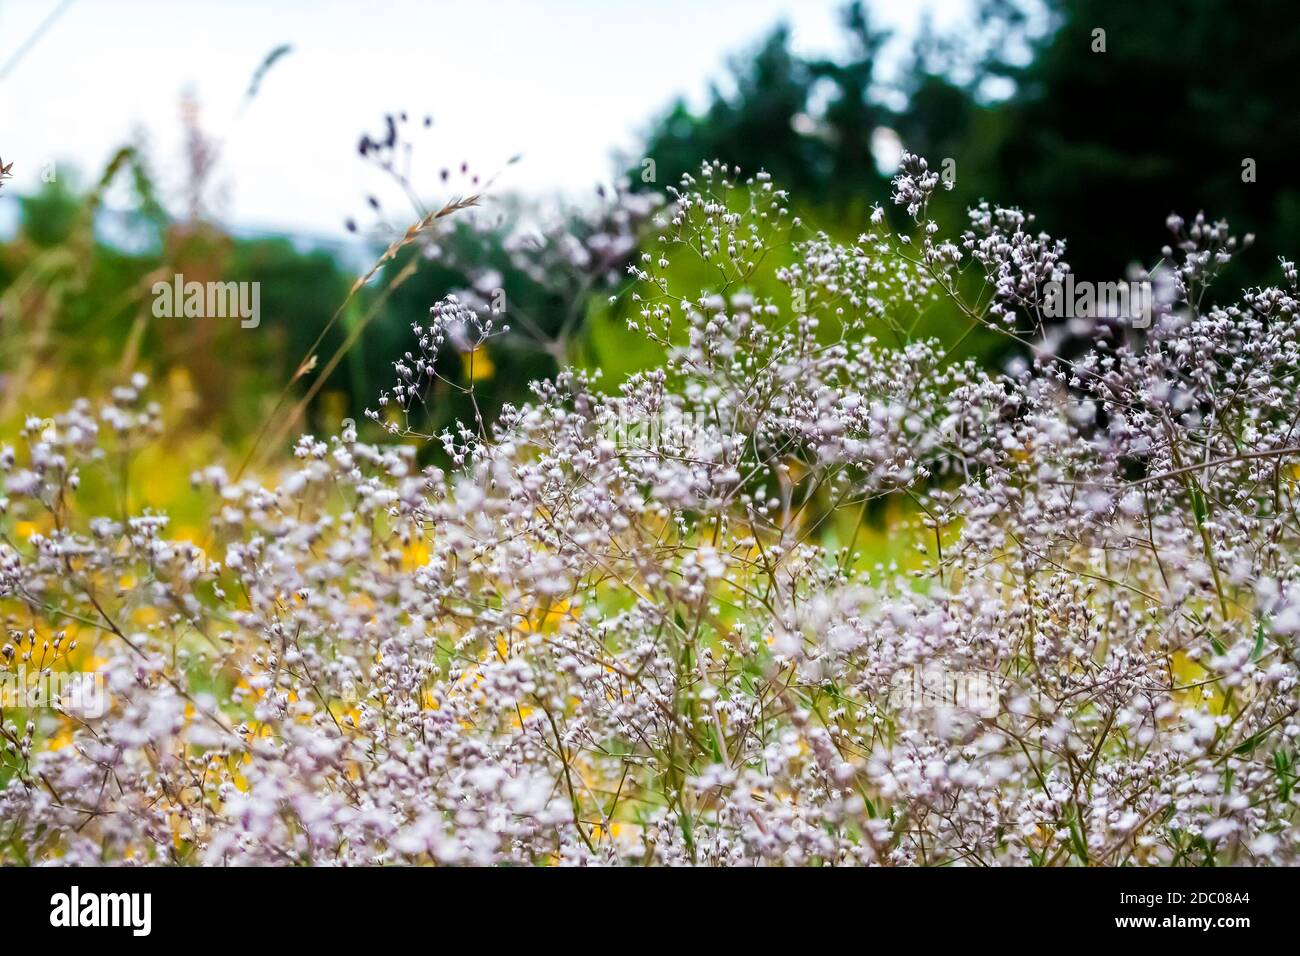 Nahaufnahme des wilden Gypsophila (auch bekannt als Baby's Atem, oder babe Atem) Blumen auf unscharfen sommer wiese Hintergrund Stockfoto